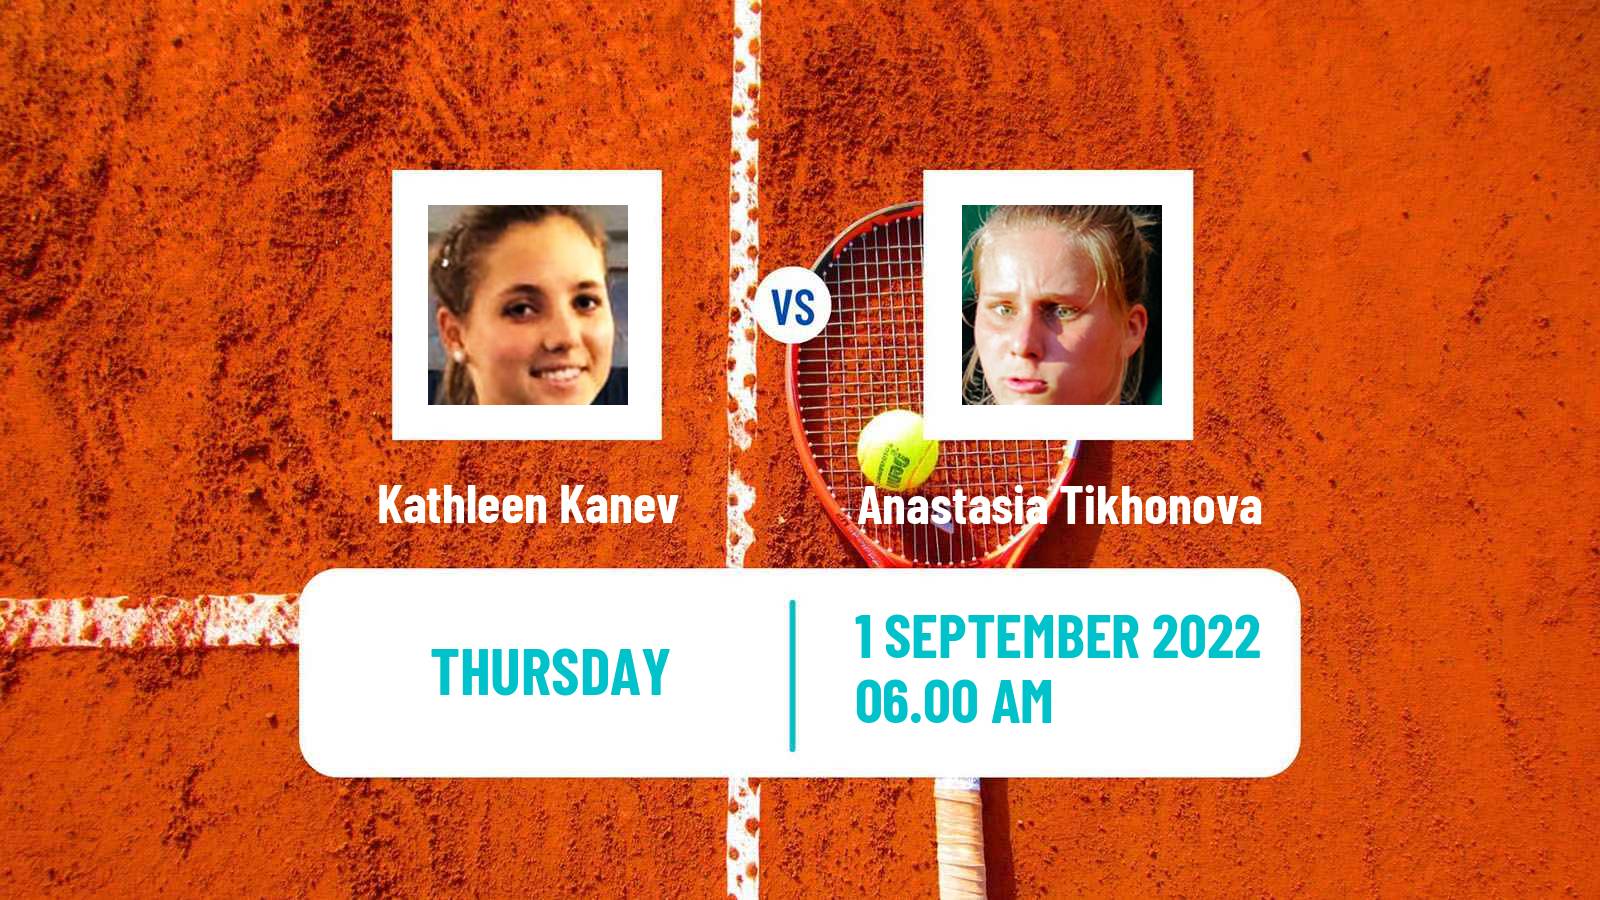 Tennis ITF Tournaments Kathleen Kanev - Anastasia Tikhonova